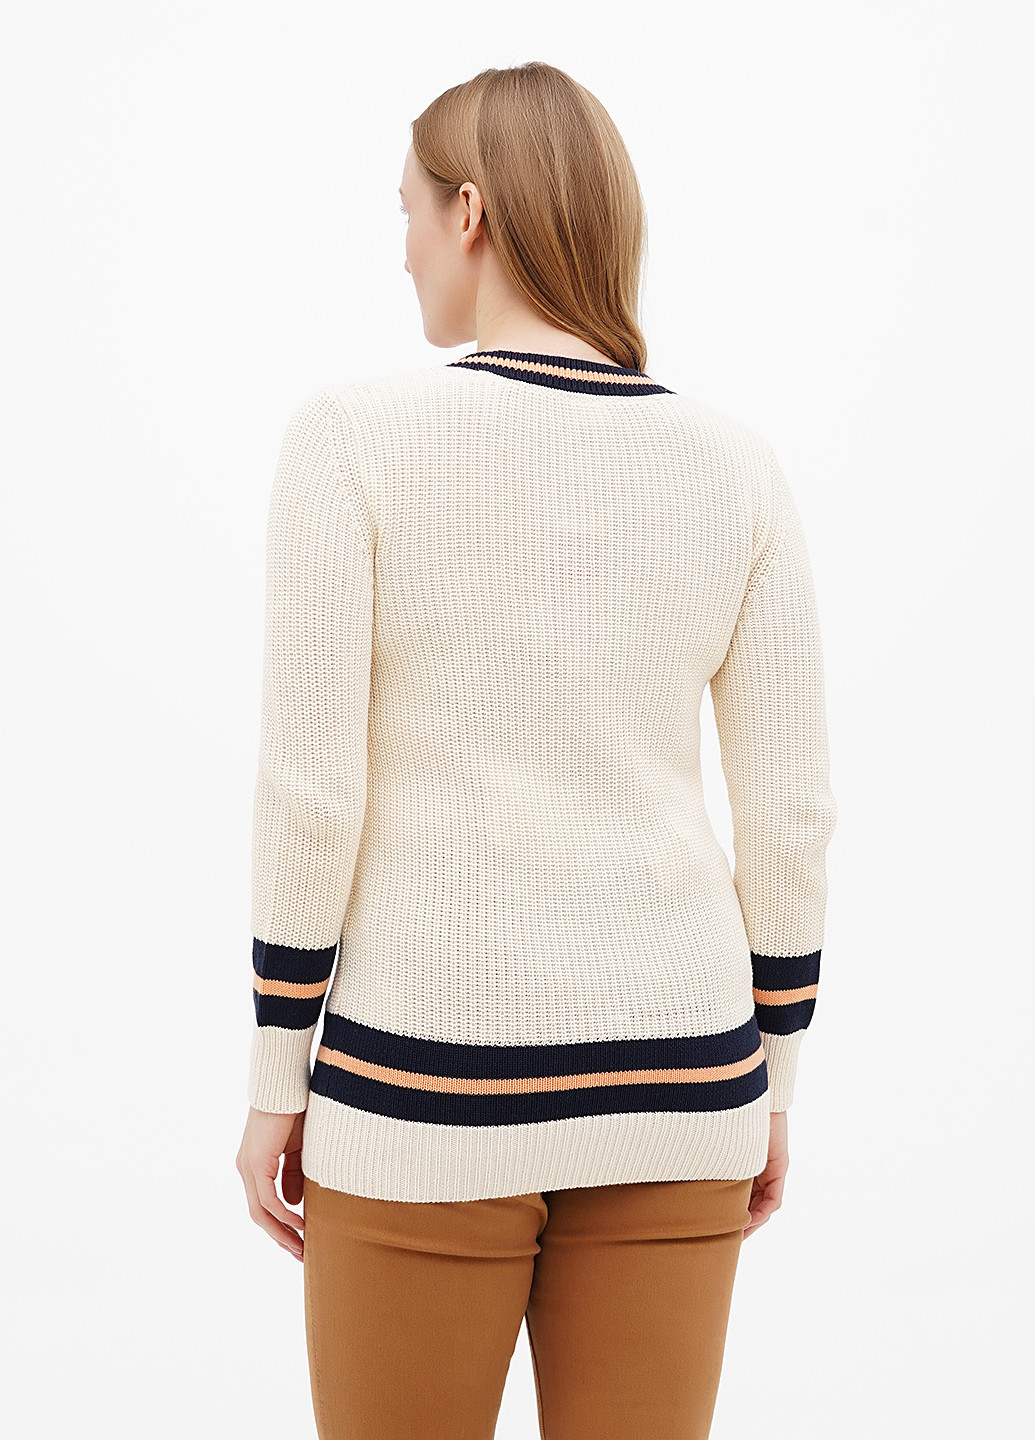 Светло-бежевый демисезонный пуловер пуловер S.Oliver